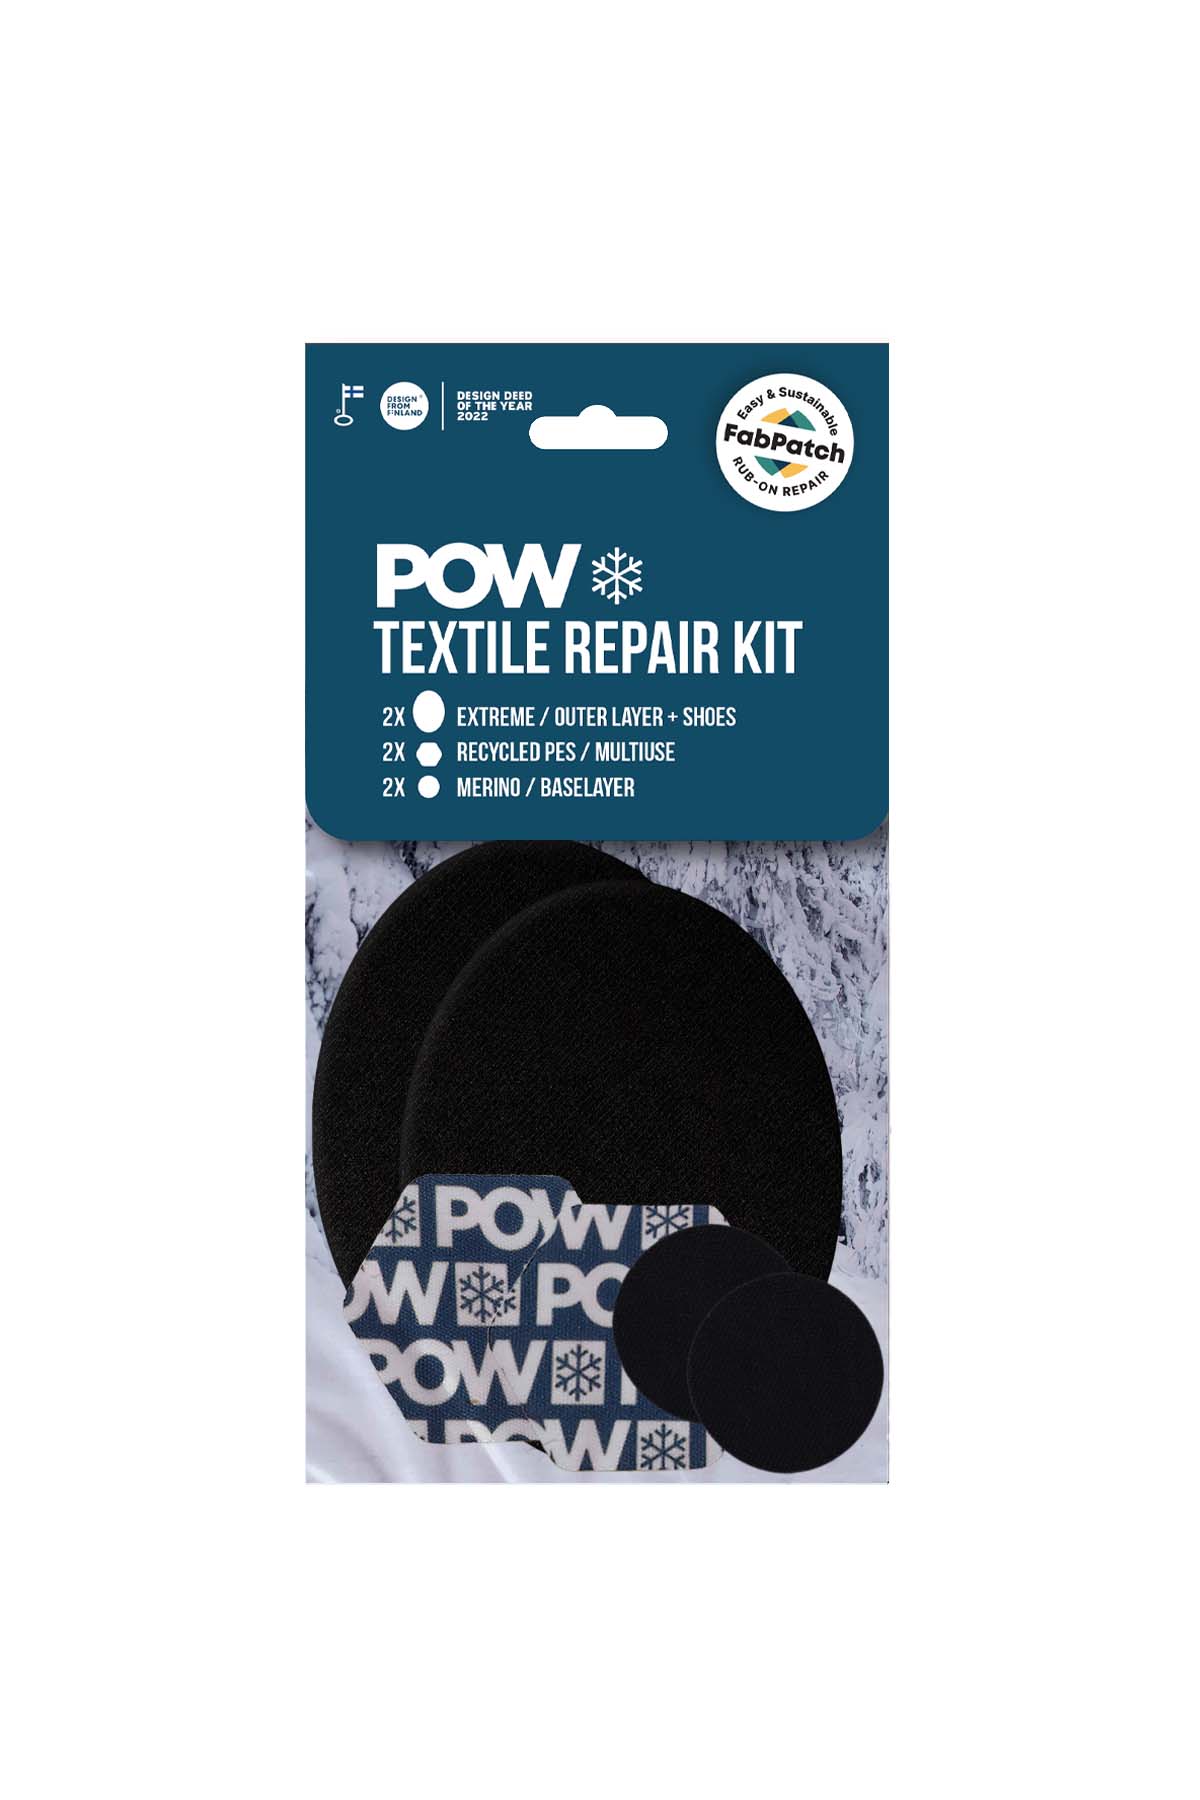 POW Textile repair kit